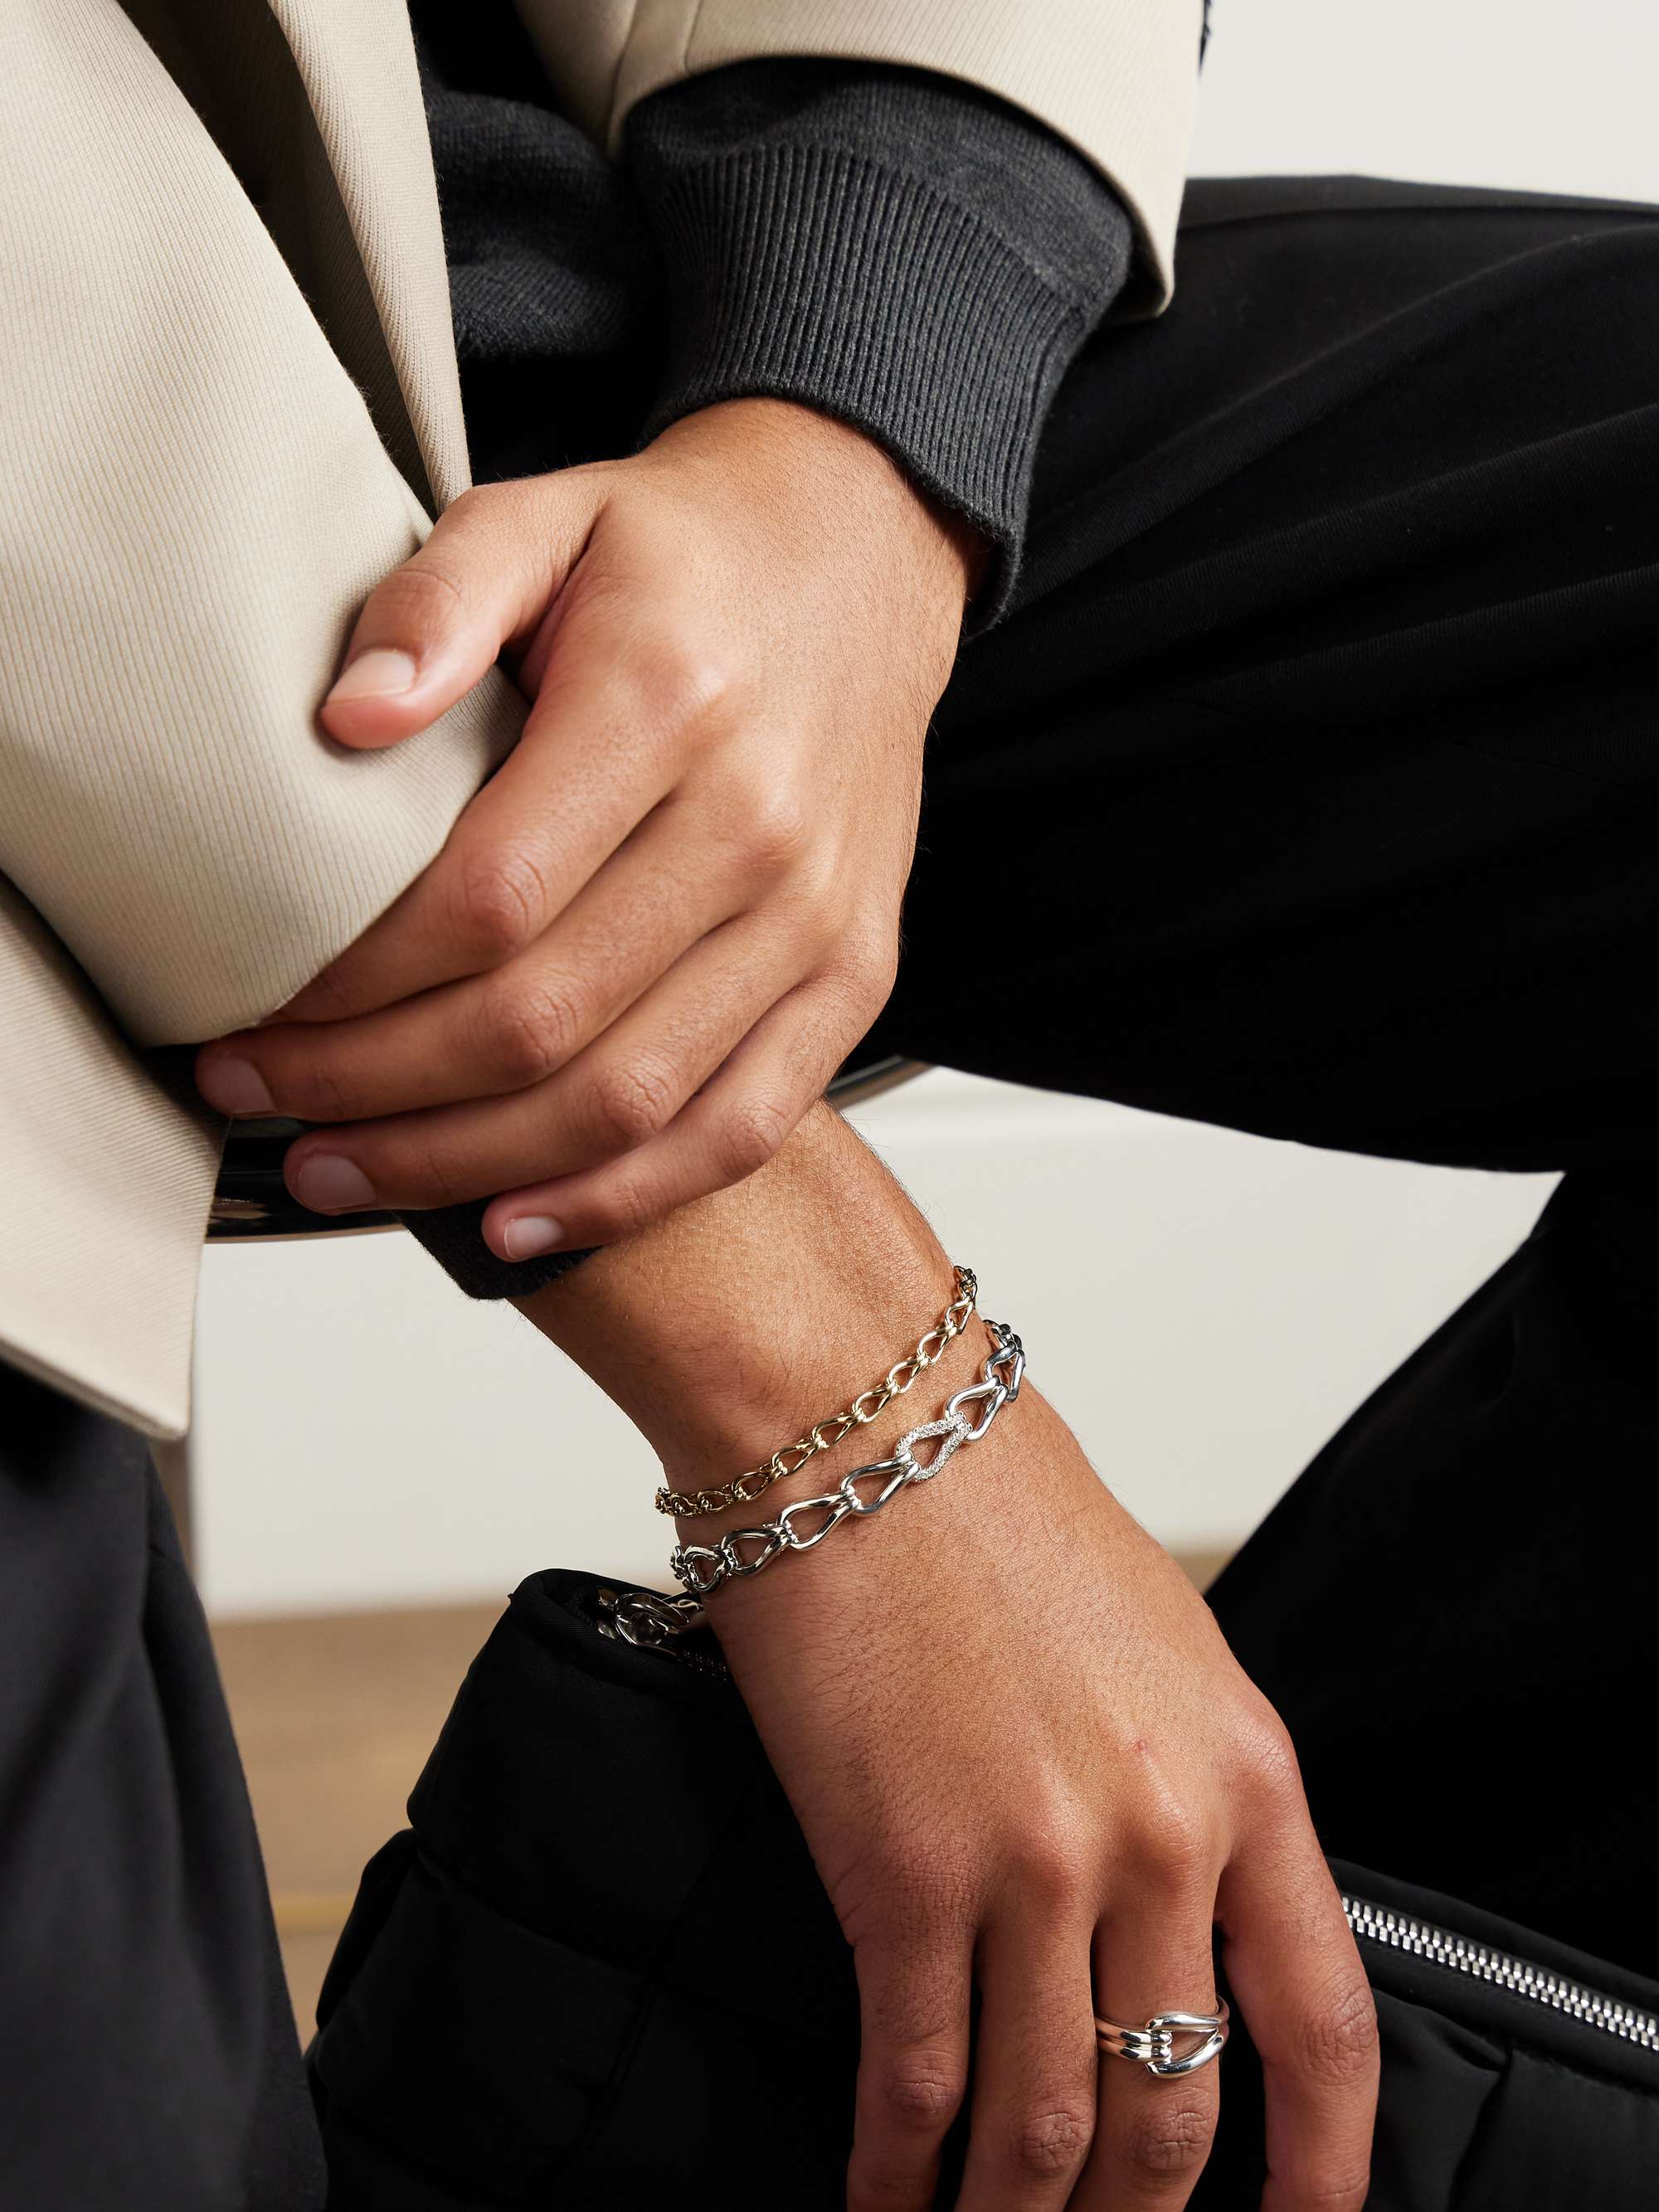 Groom Wears Gold Bracelet Bride Wedding Stock Photo 2135508483 |  Shutterstock